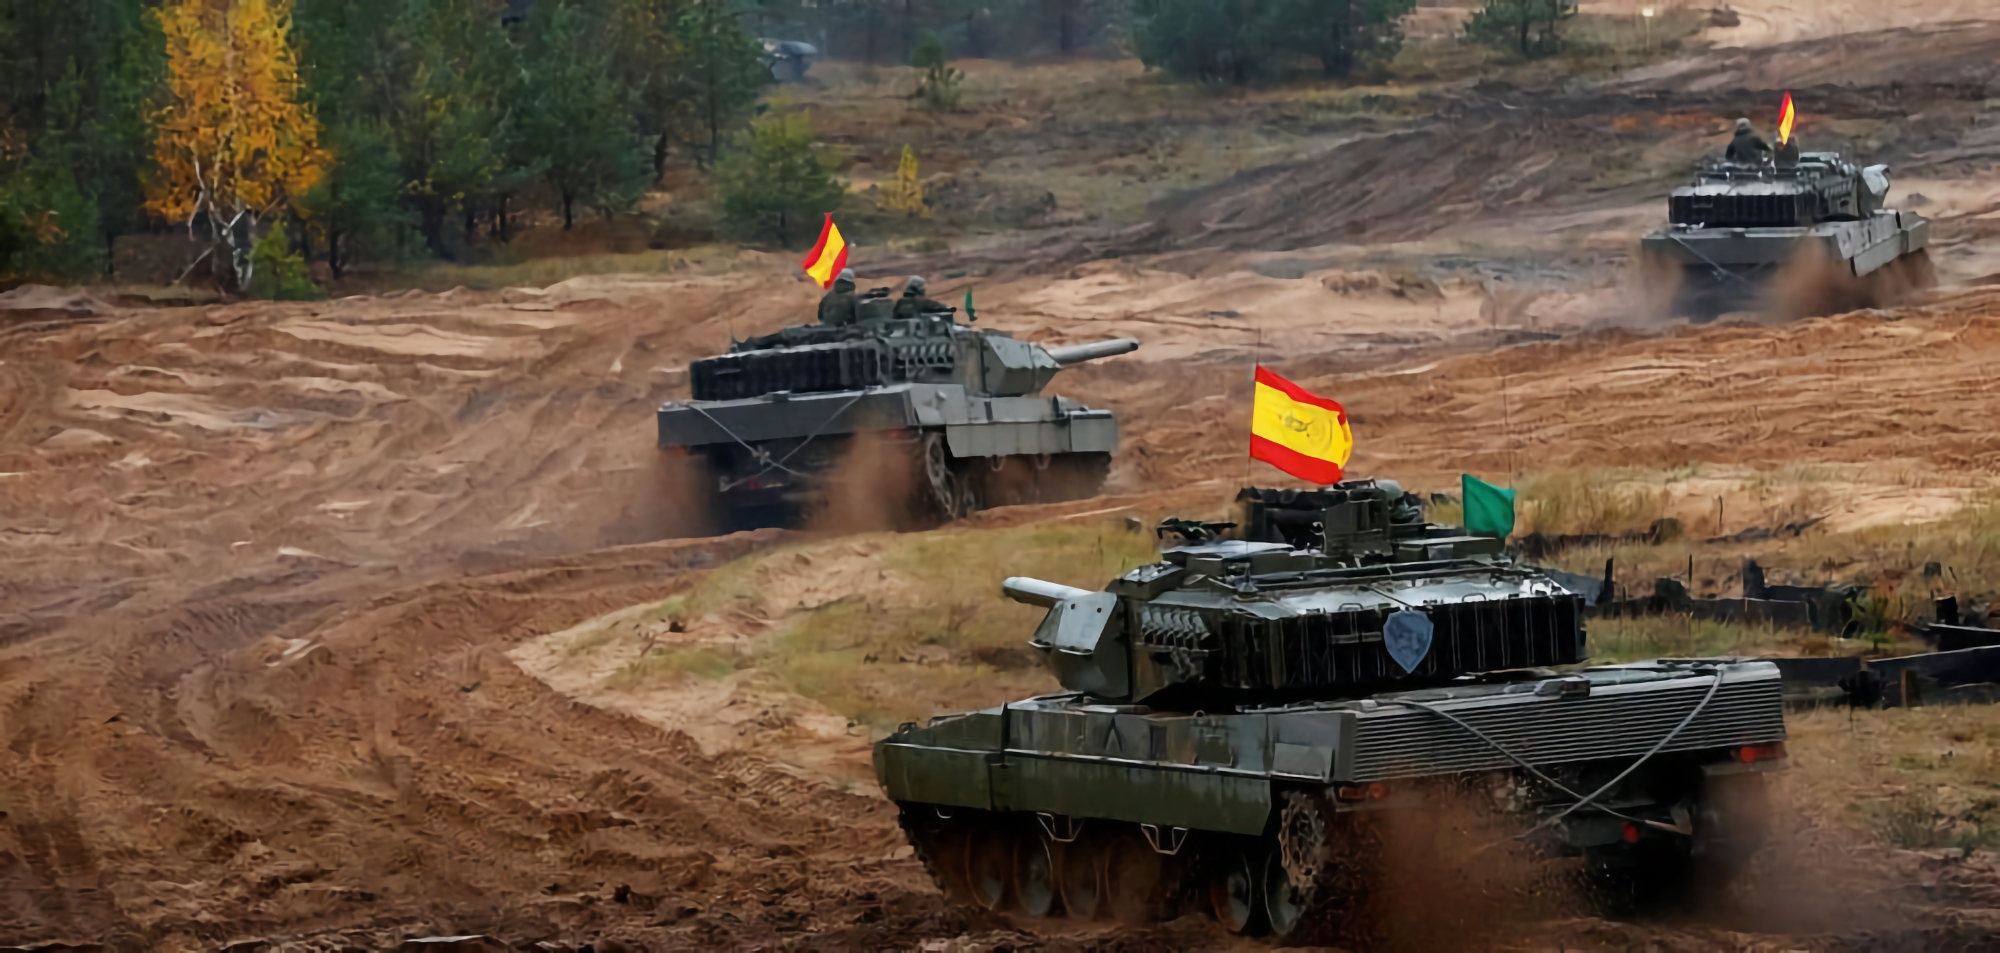 Quand l'Espagne remettra-t-elle des chars Leopard 2 à l'Ukraine ?